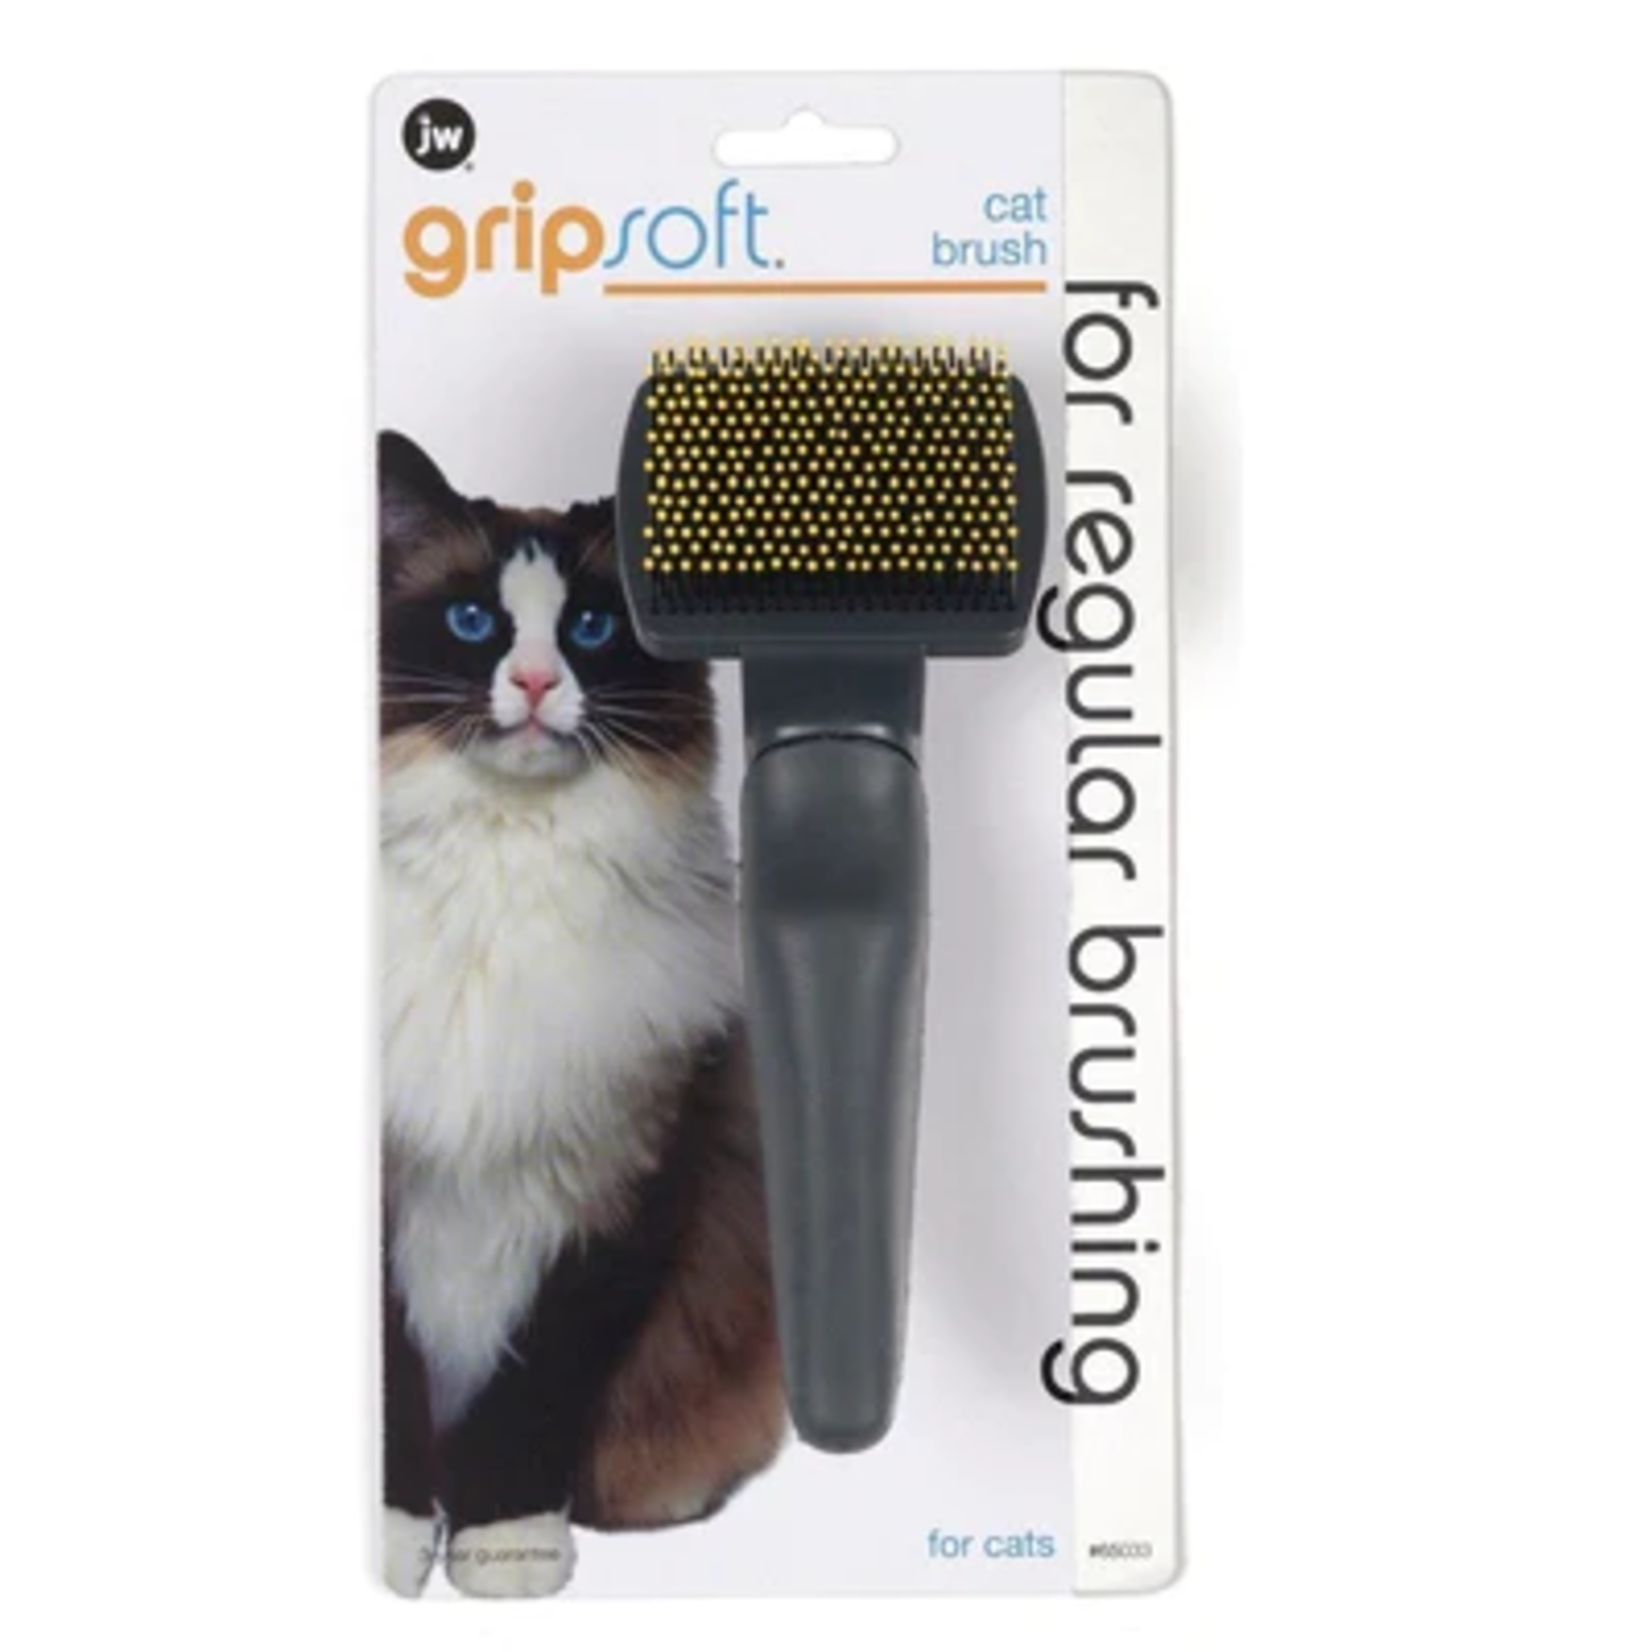 JW JW Pet Company Cat GripSoft Small Slicker Brush